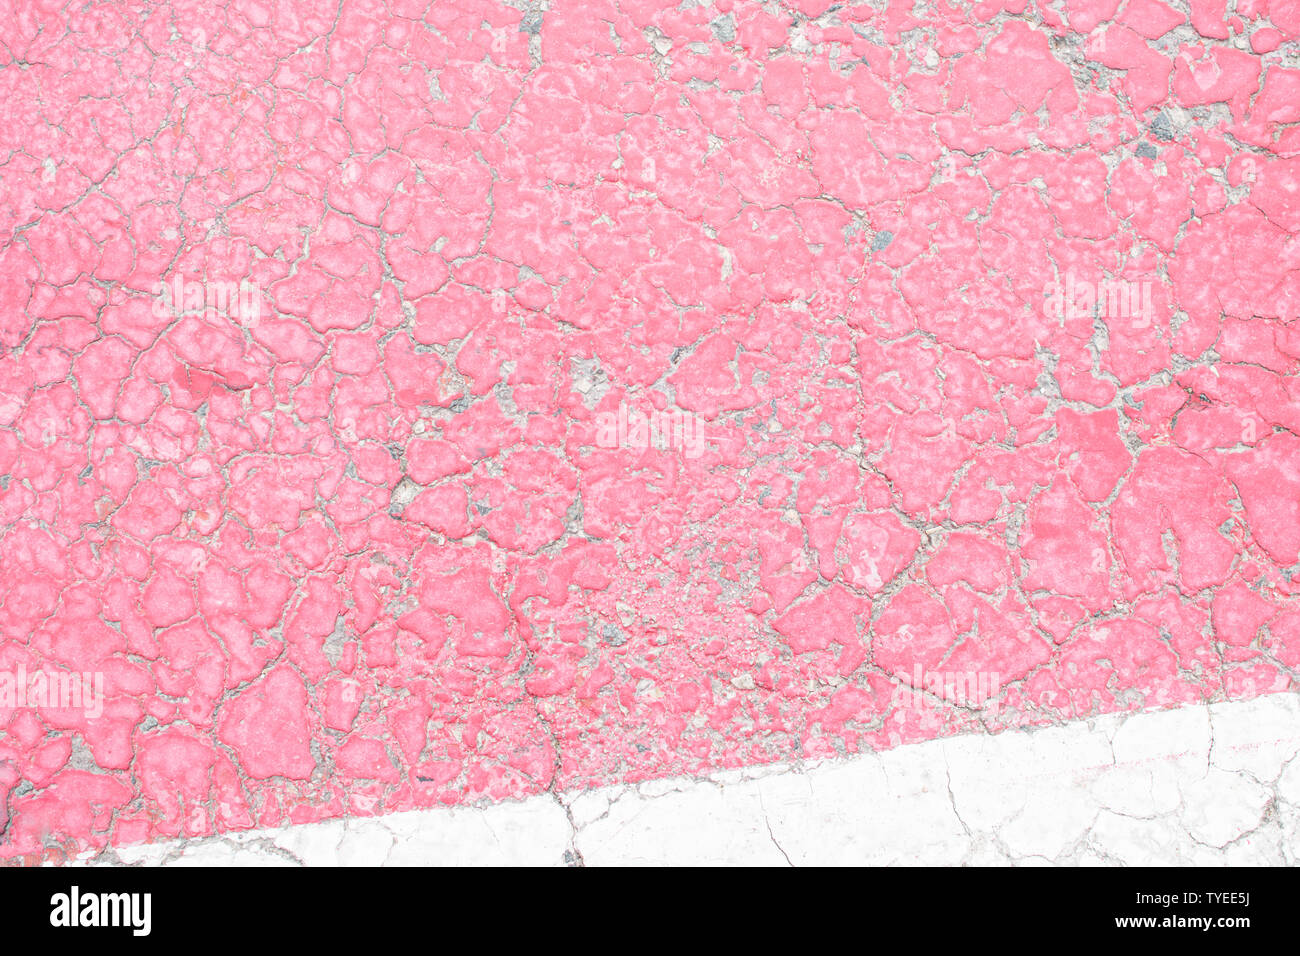 Rosa e Bianco vecchia vernice incrinata, incrinato dal calore del sole sulla superficie di calcestruzzo. Ottimo per la progettazione e la consistenza dello sfondo. Foto Stock